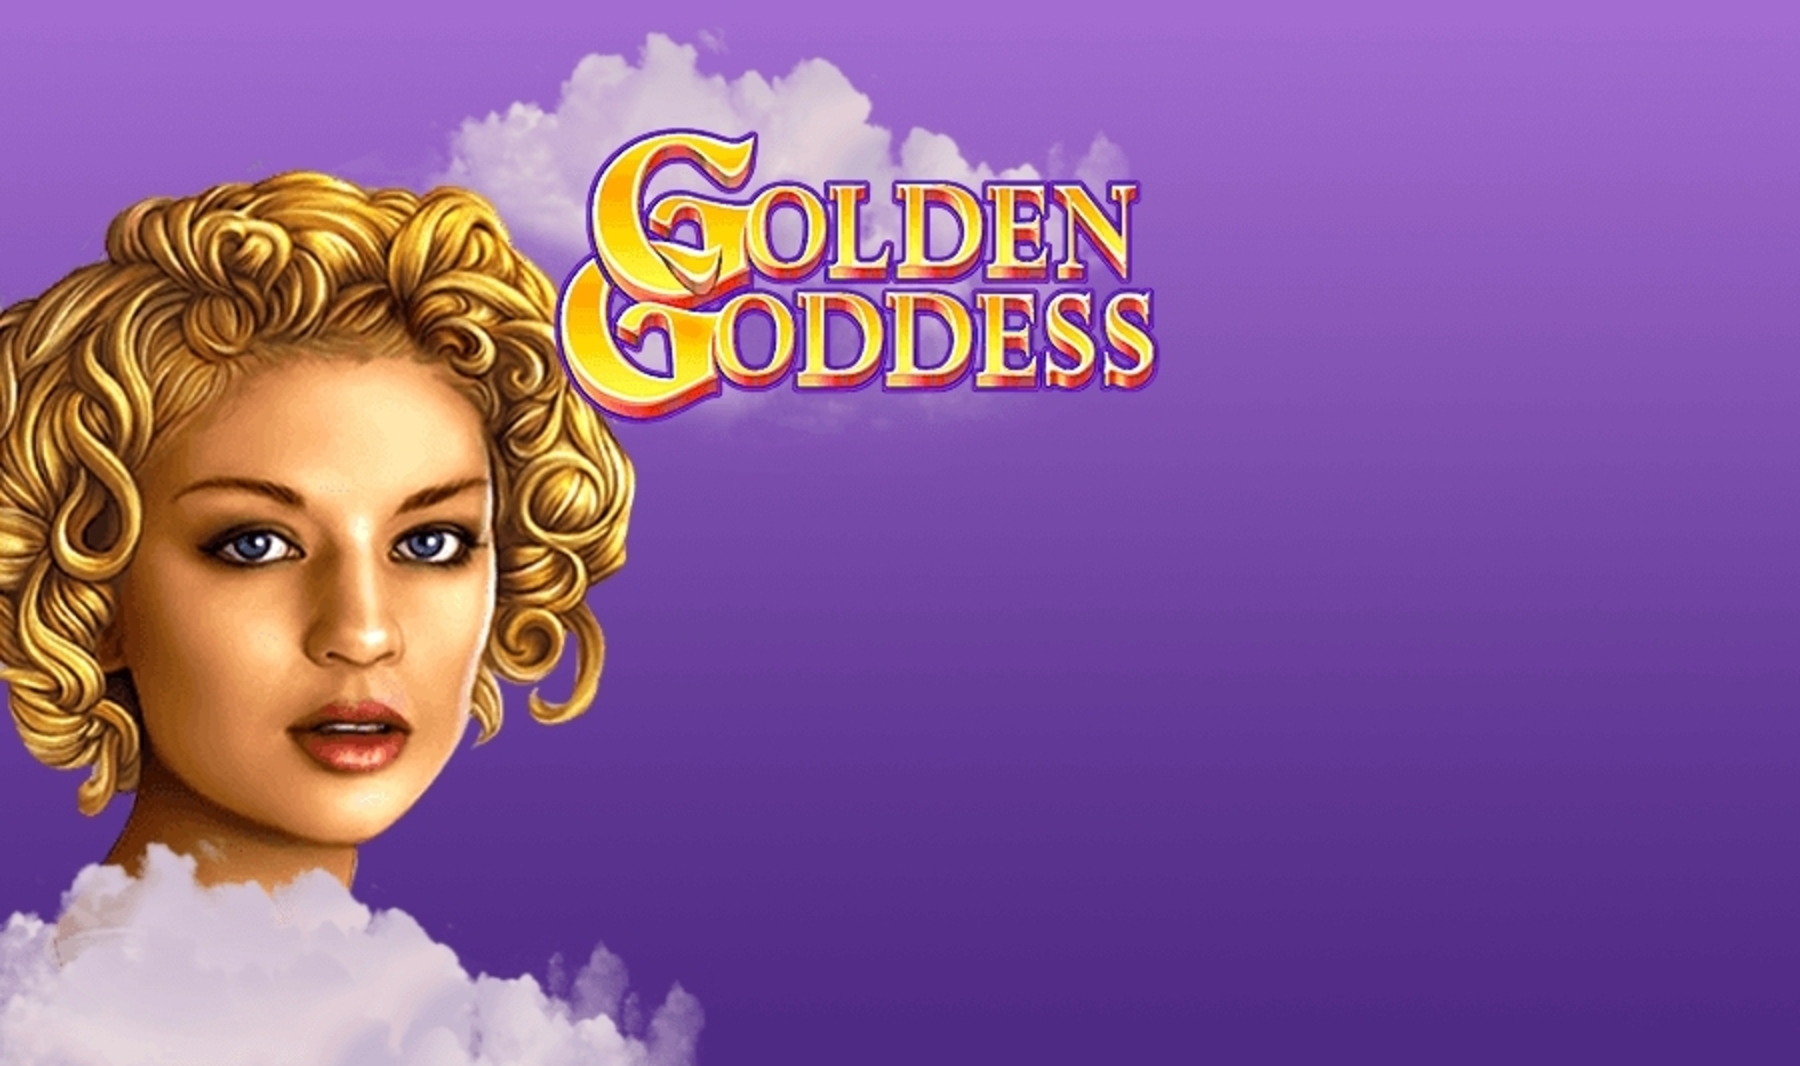 Golden Goddess demo